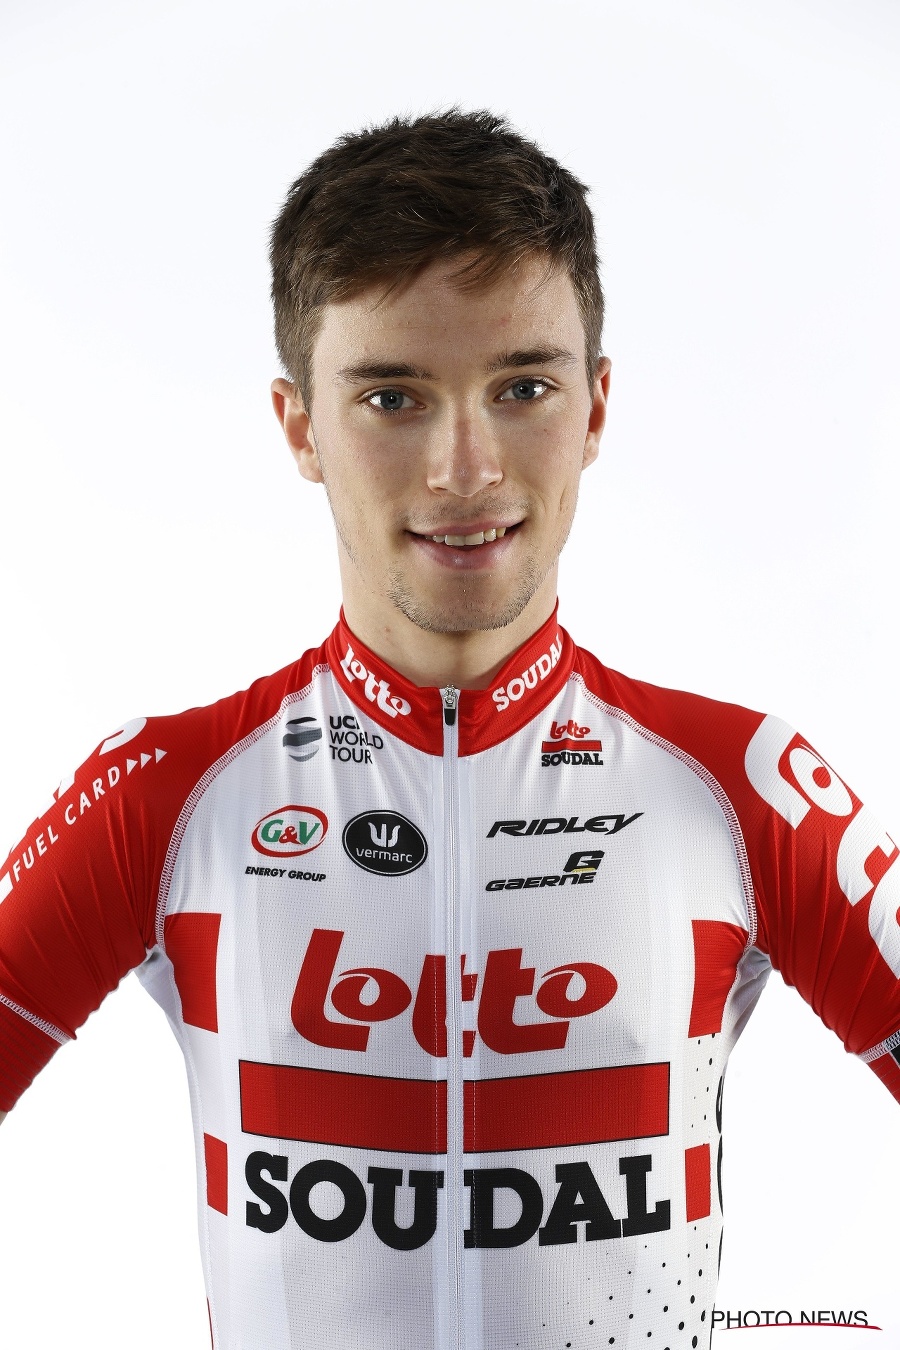 Dvadsaťdvaročný belgický cyklista Bjorg